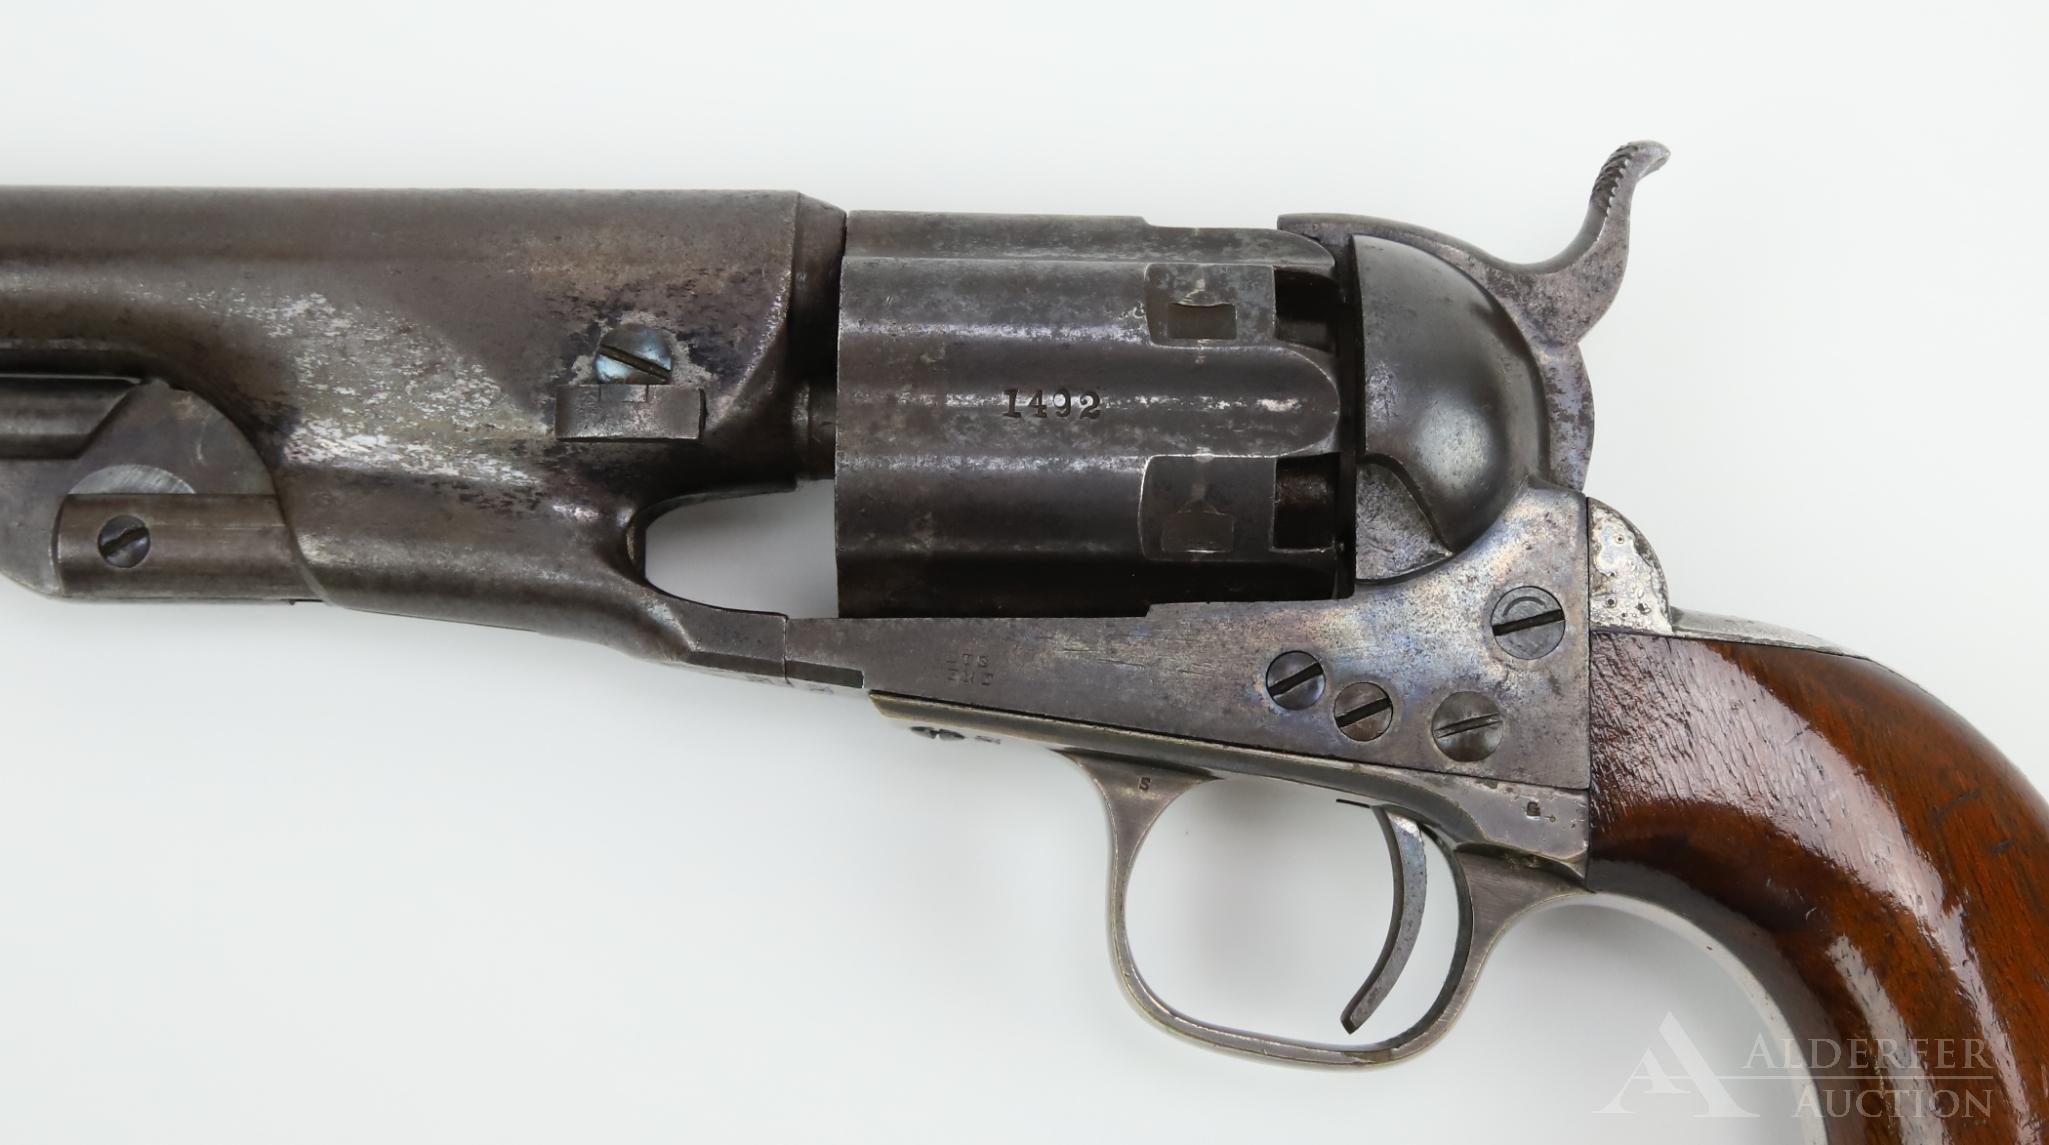 Colt Model 1860 Army Revolver-Fluted Cylinder